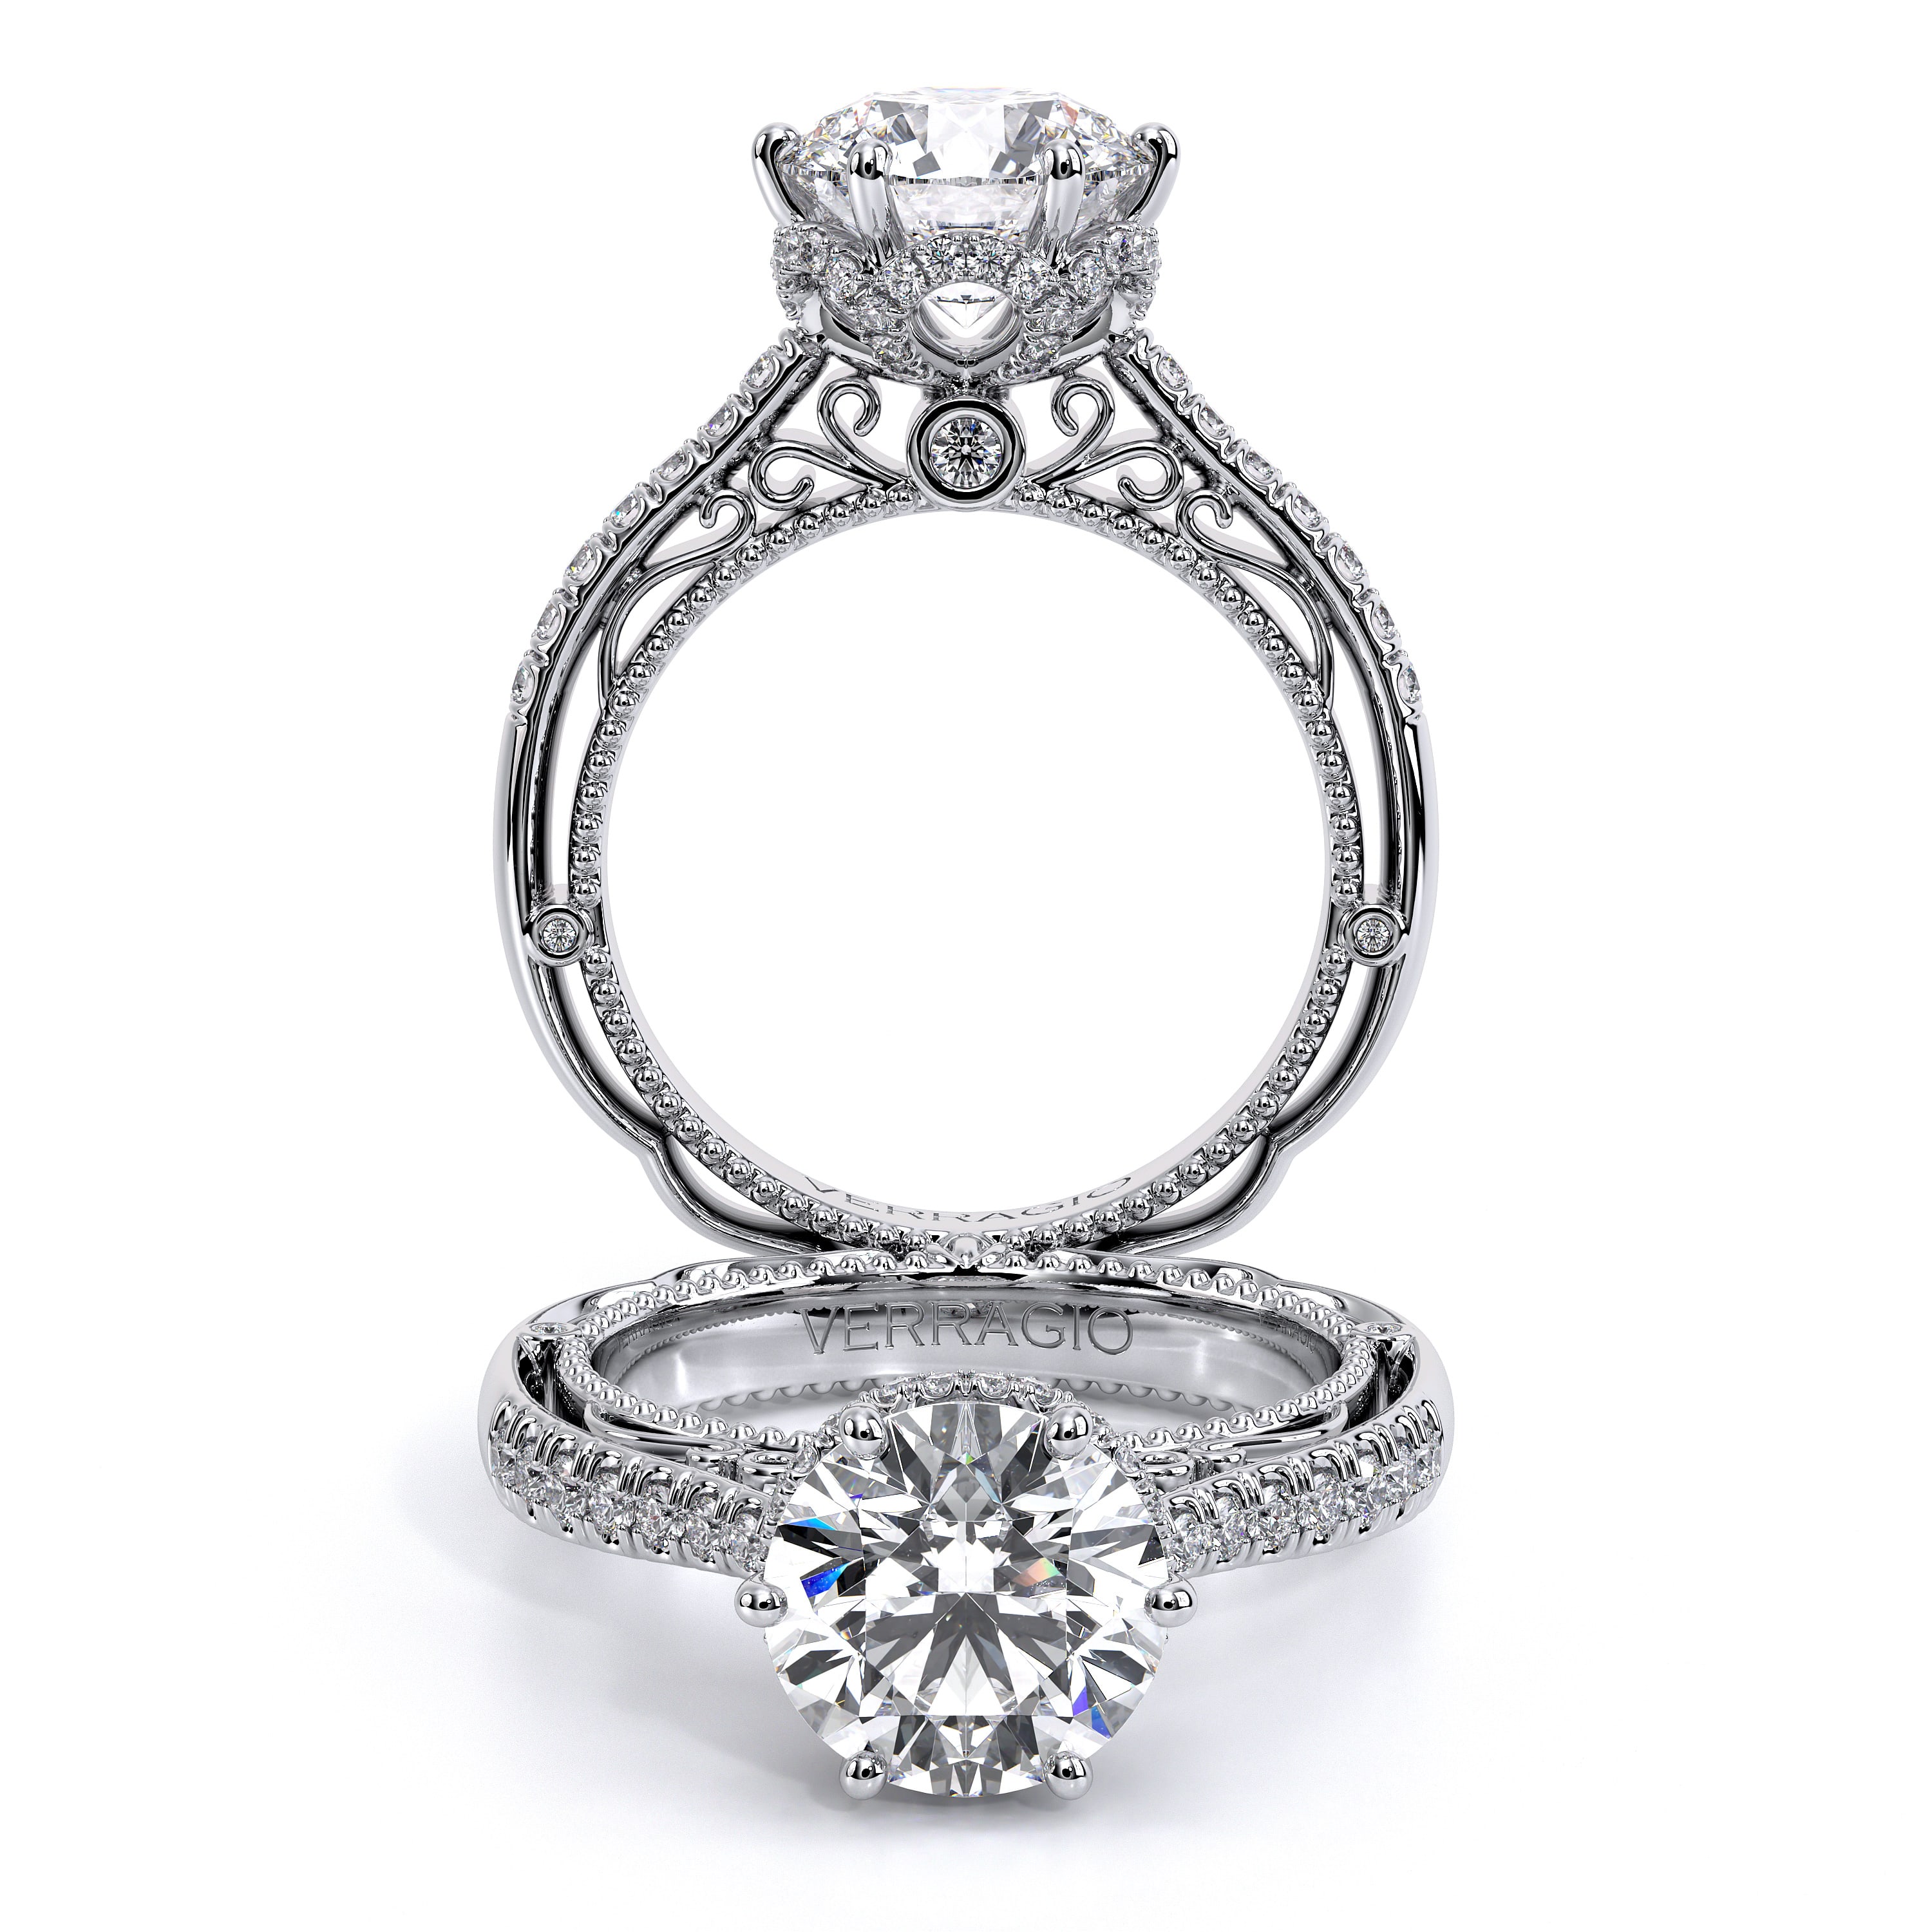 Barkev's Black & White Diamond Engagement Ring 789